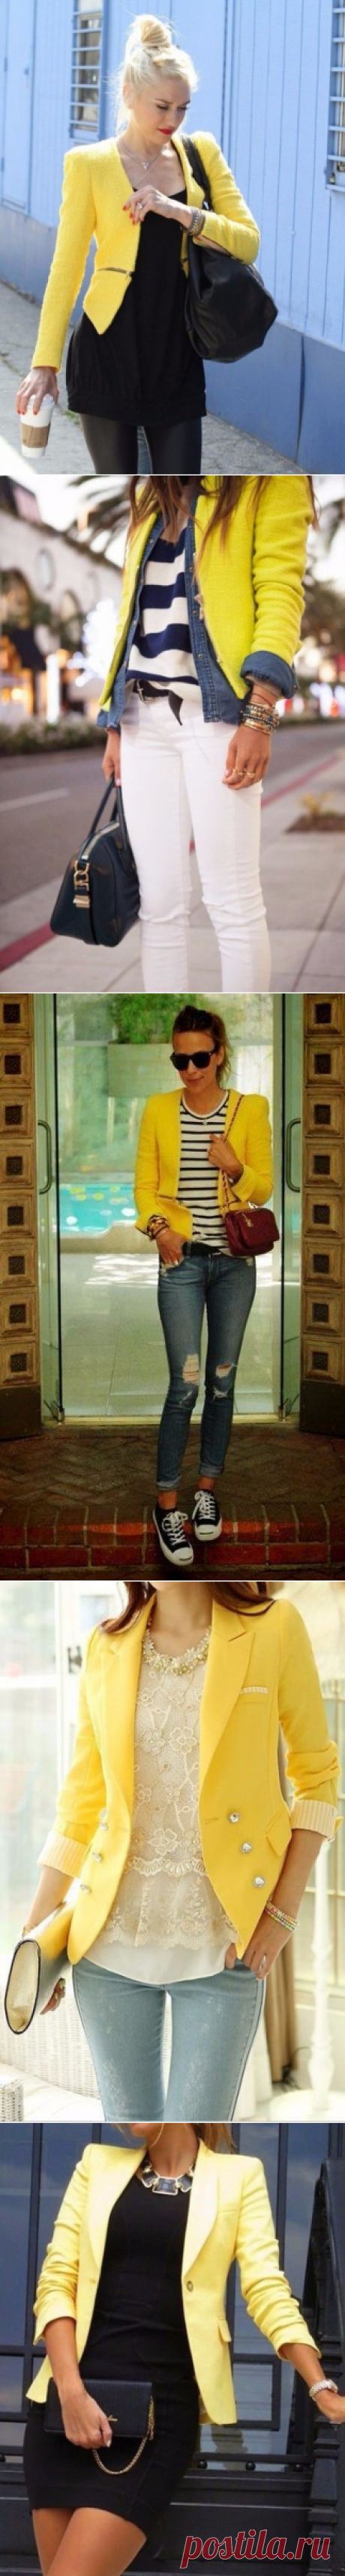 Чтобы женский желтый пиджак ужился в вашем гардеробе, следует внимательно отнестись к выбору других цветовых комбинаций.